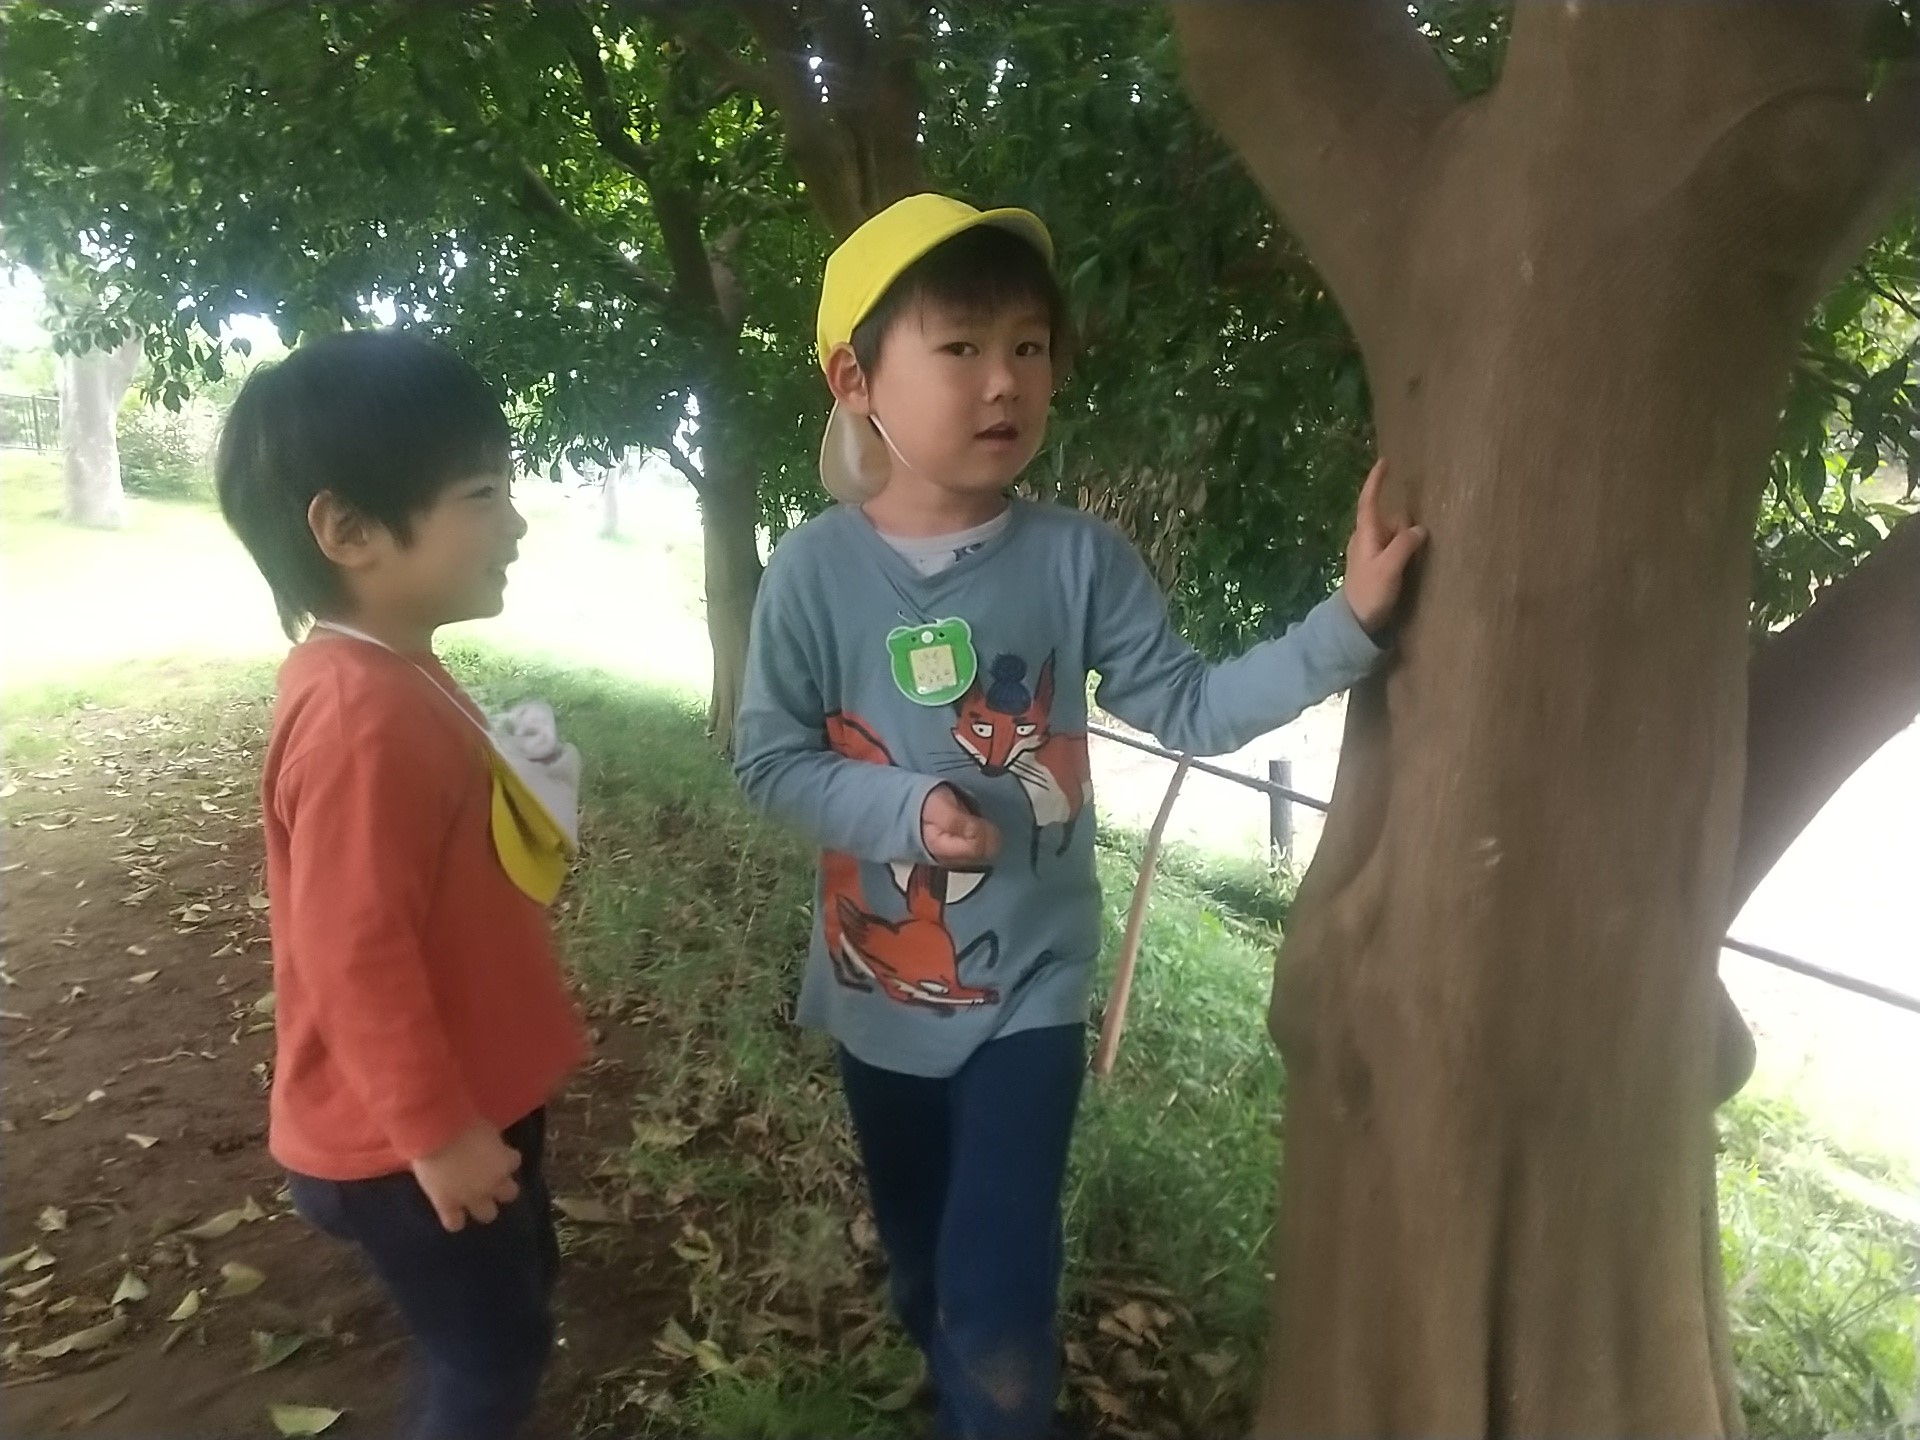 虫木に登るダンゴムシを観察する子どもたち